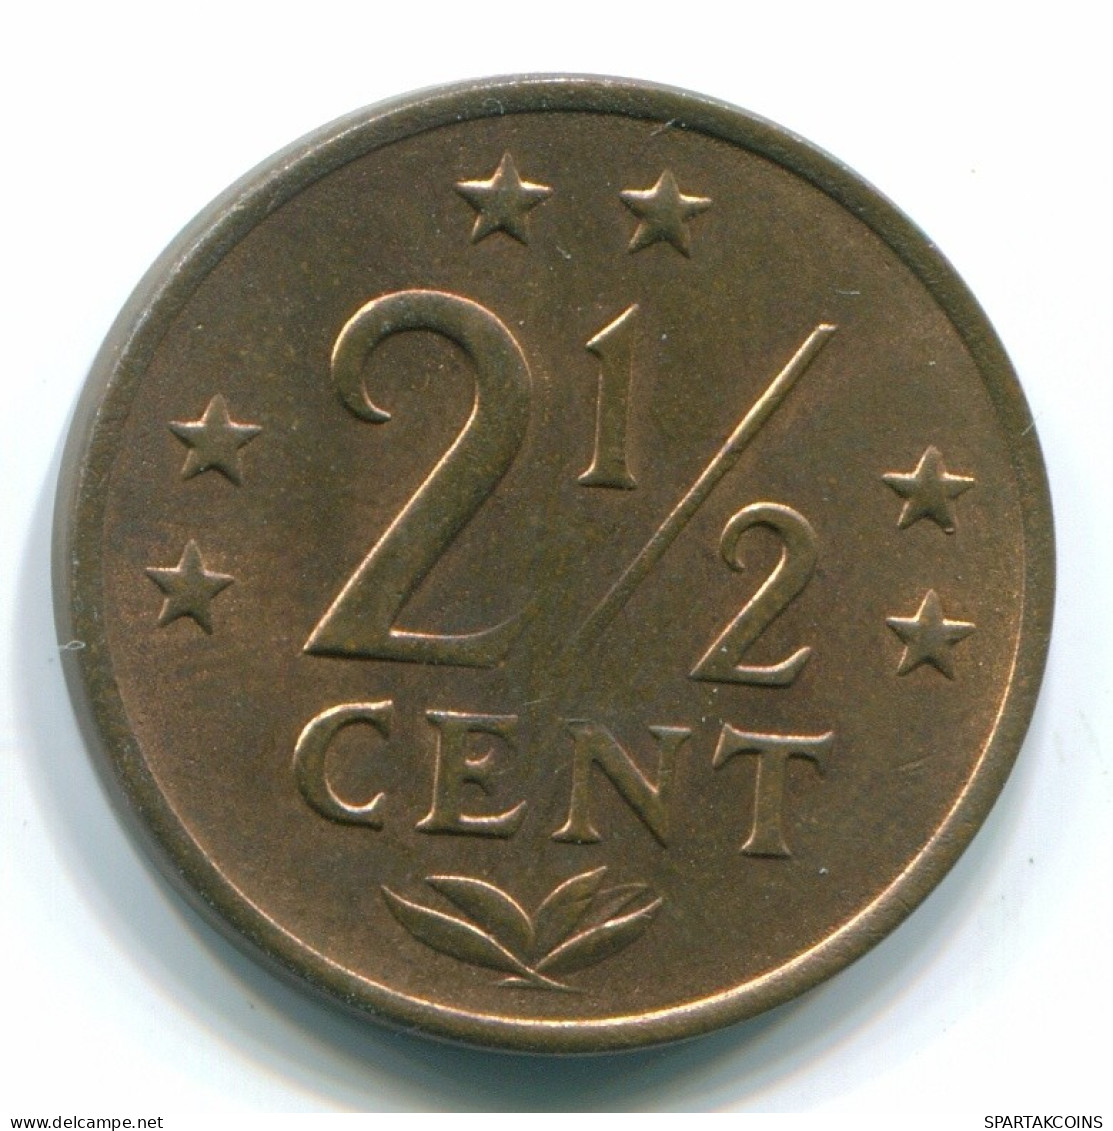 2 1/2 CENT 1971 NETHERLANDS ANTILLES Bronze Colonial Coin #S10487.U.A - Antilles Néerlandaises